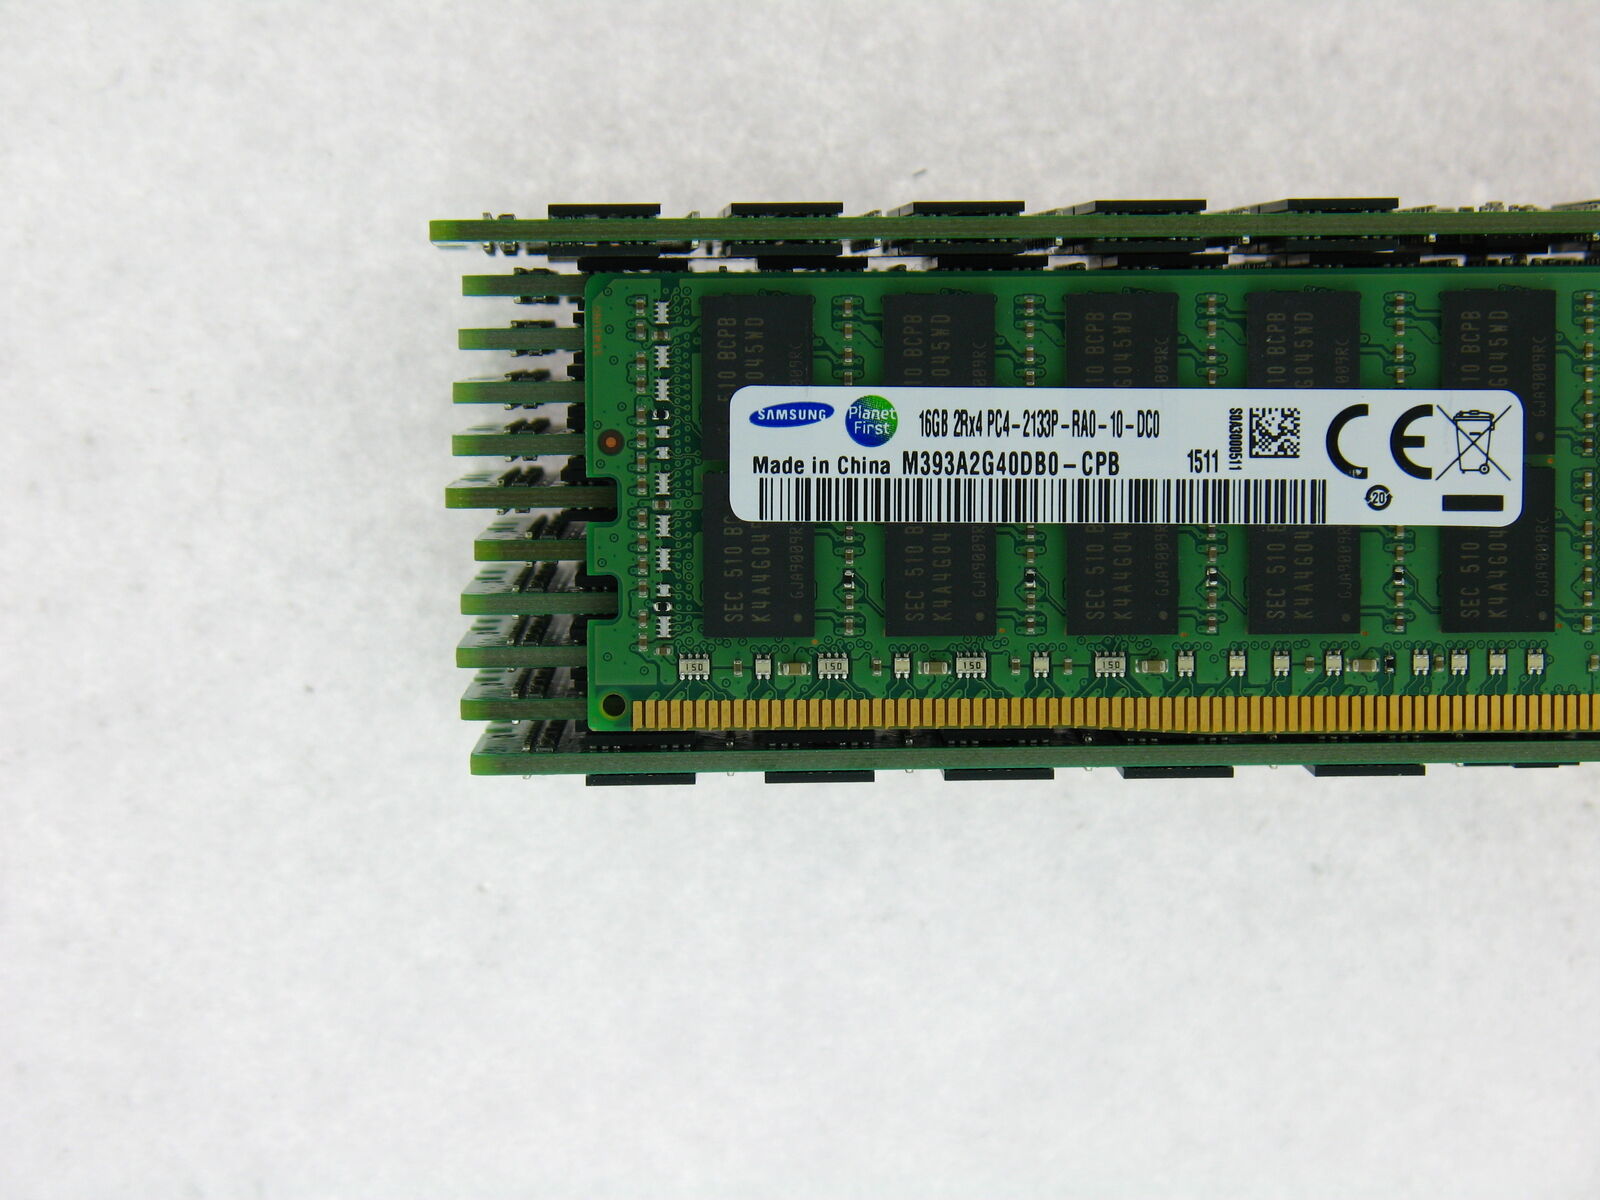 192GB (12x16GB) PC4-17000P-R DDR4 2133P ECC RDIMM Memory for Dell PowerEdge R630